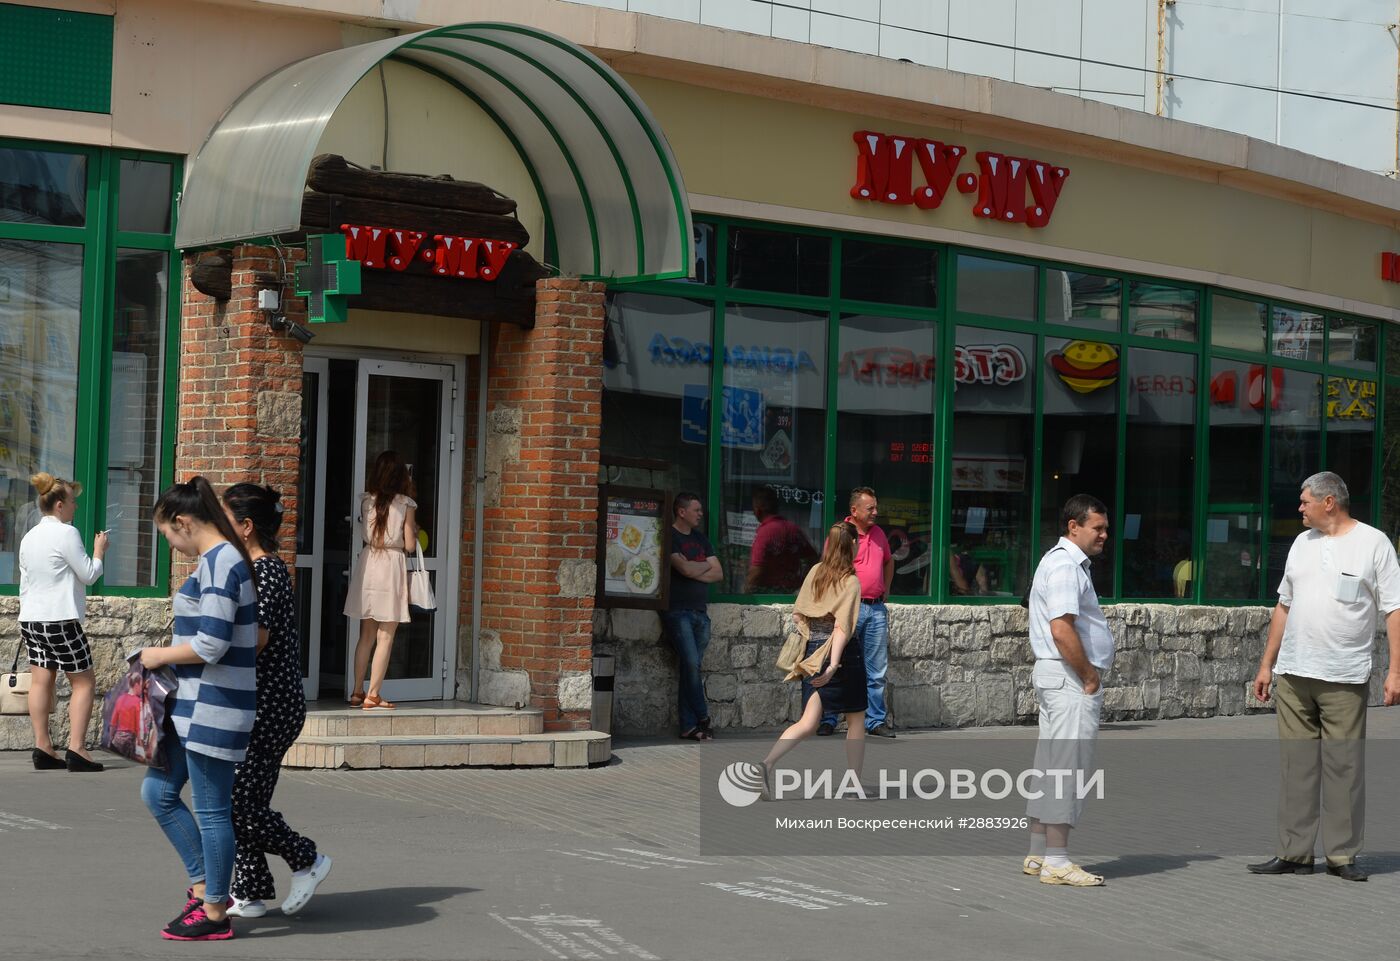 Власти Москвы объявили новый список объектов самостроя, подлежащих сносу